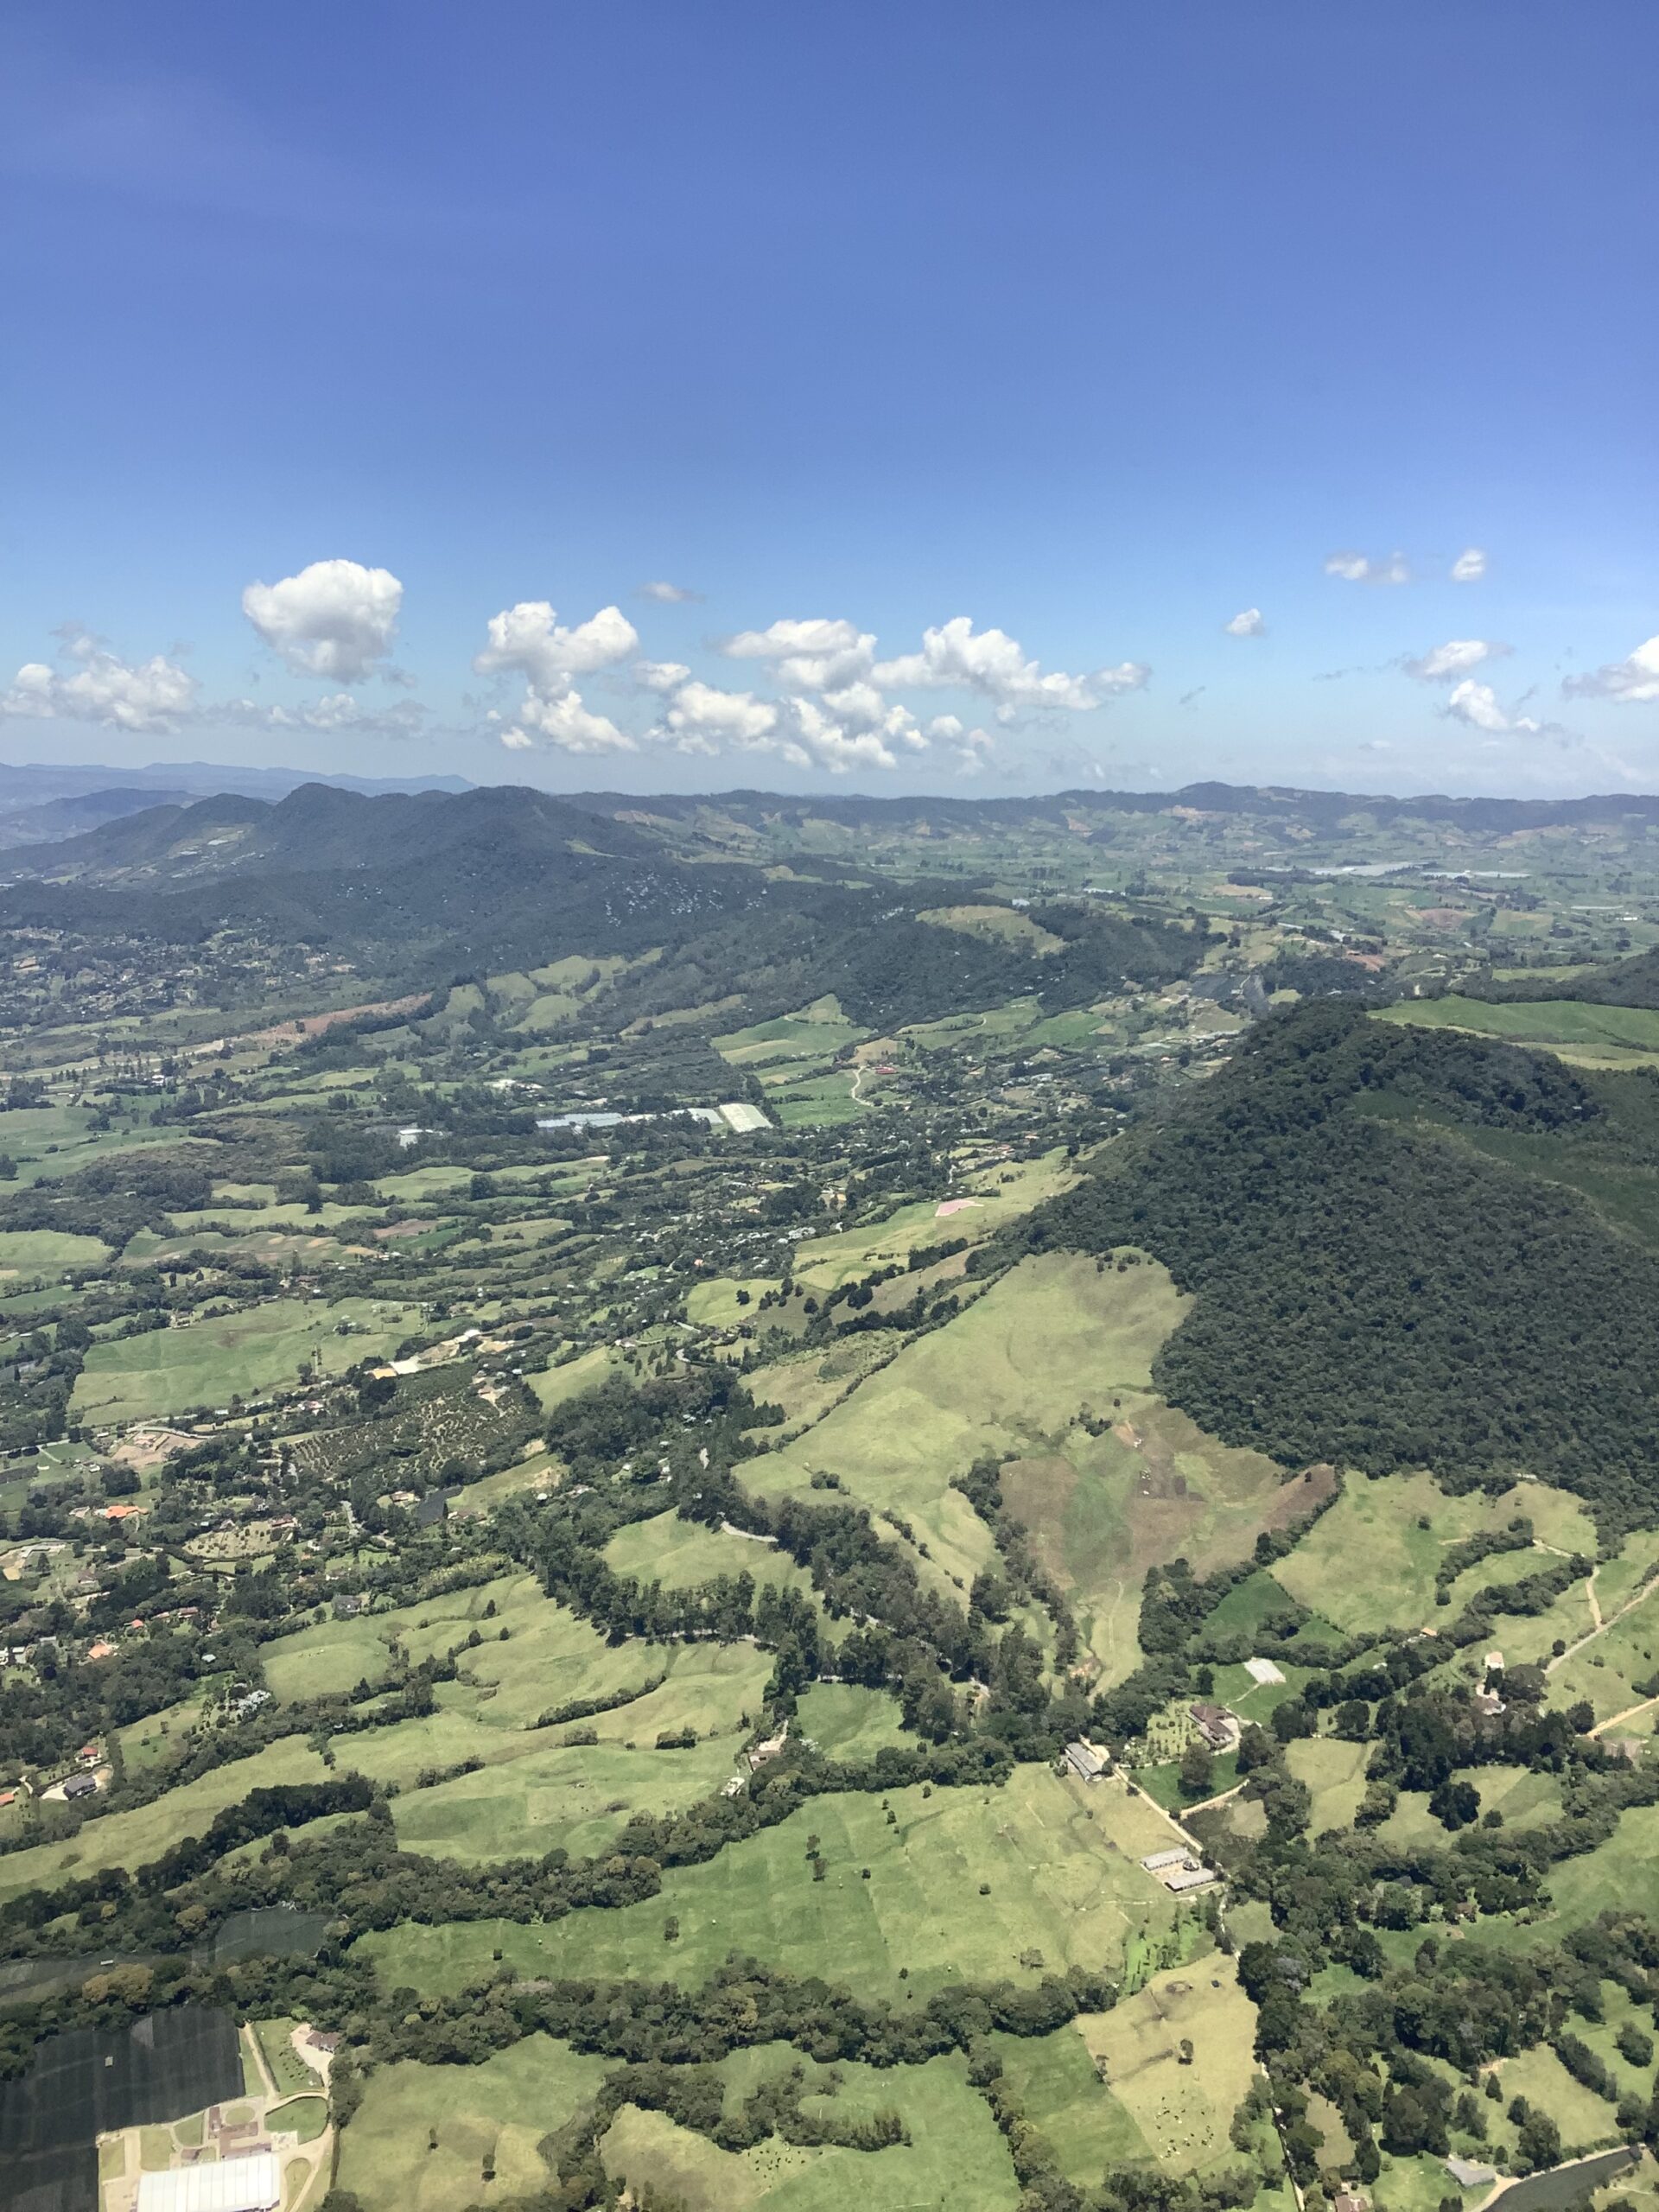 Medellín, Colombia – A Travel Blog